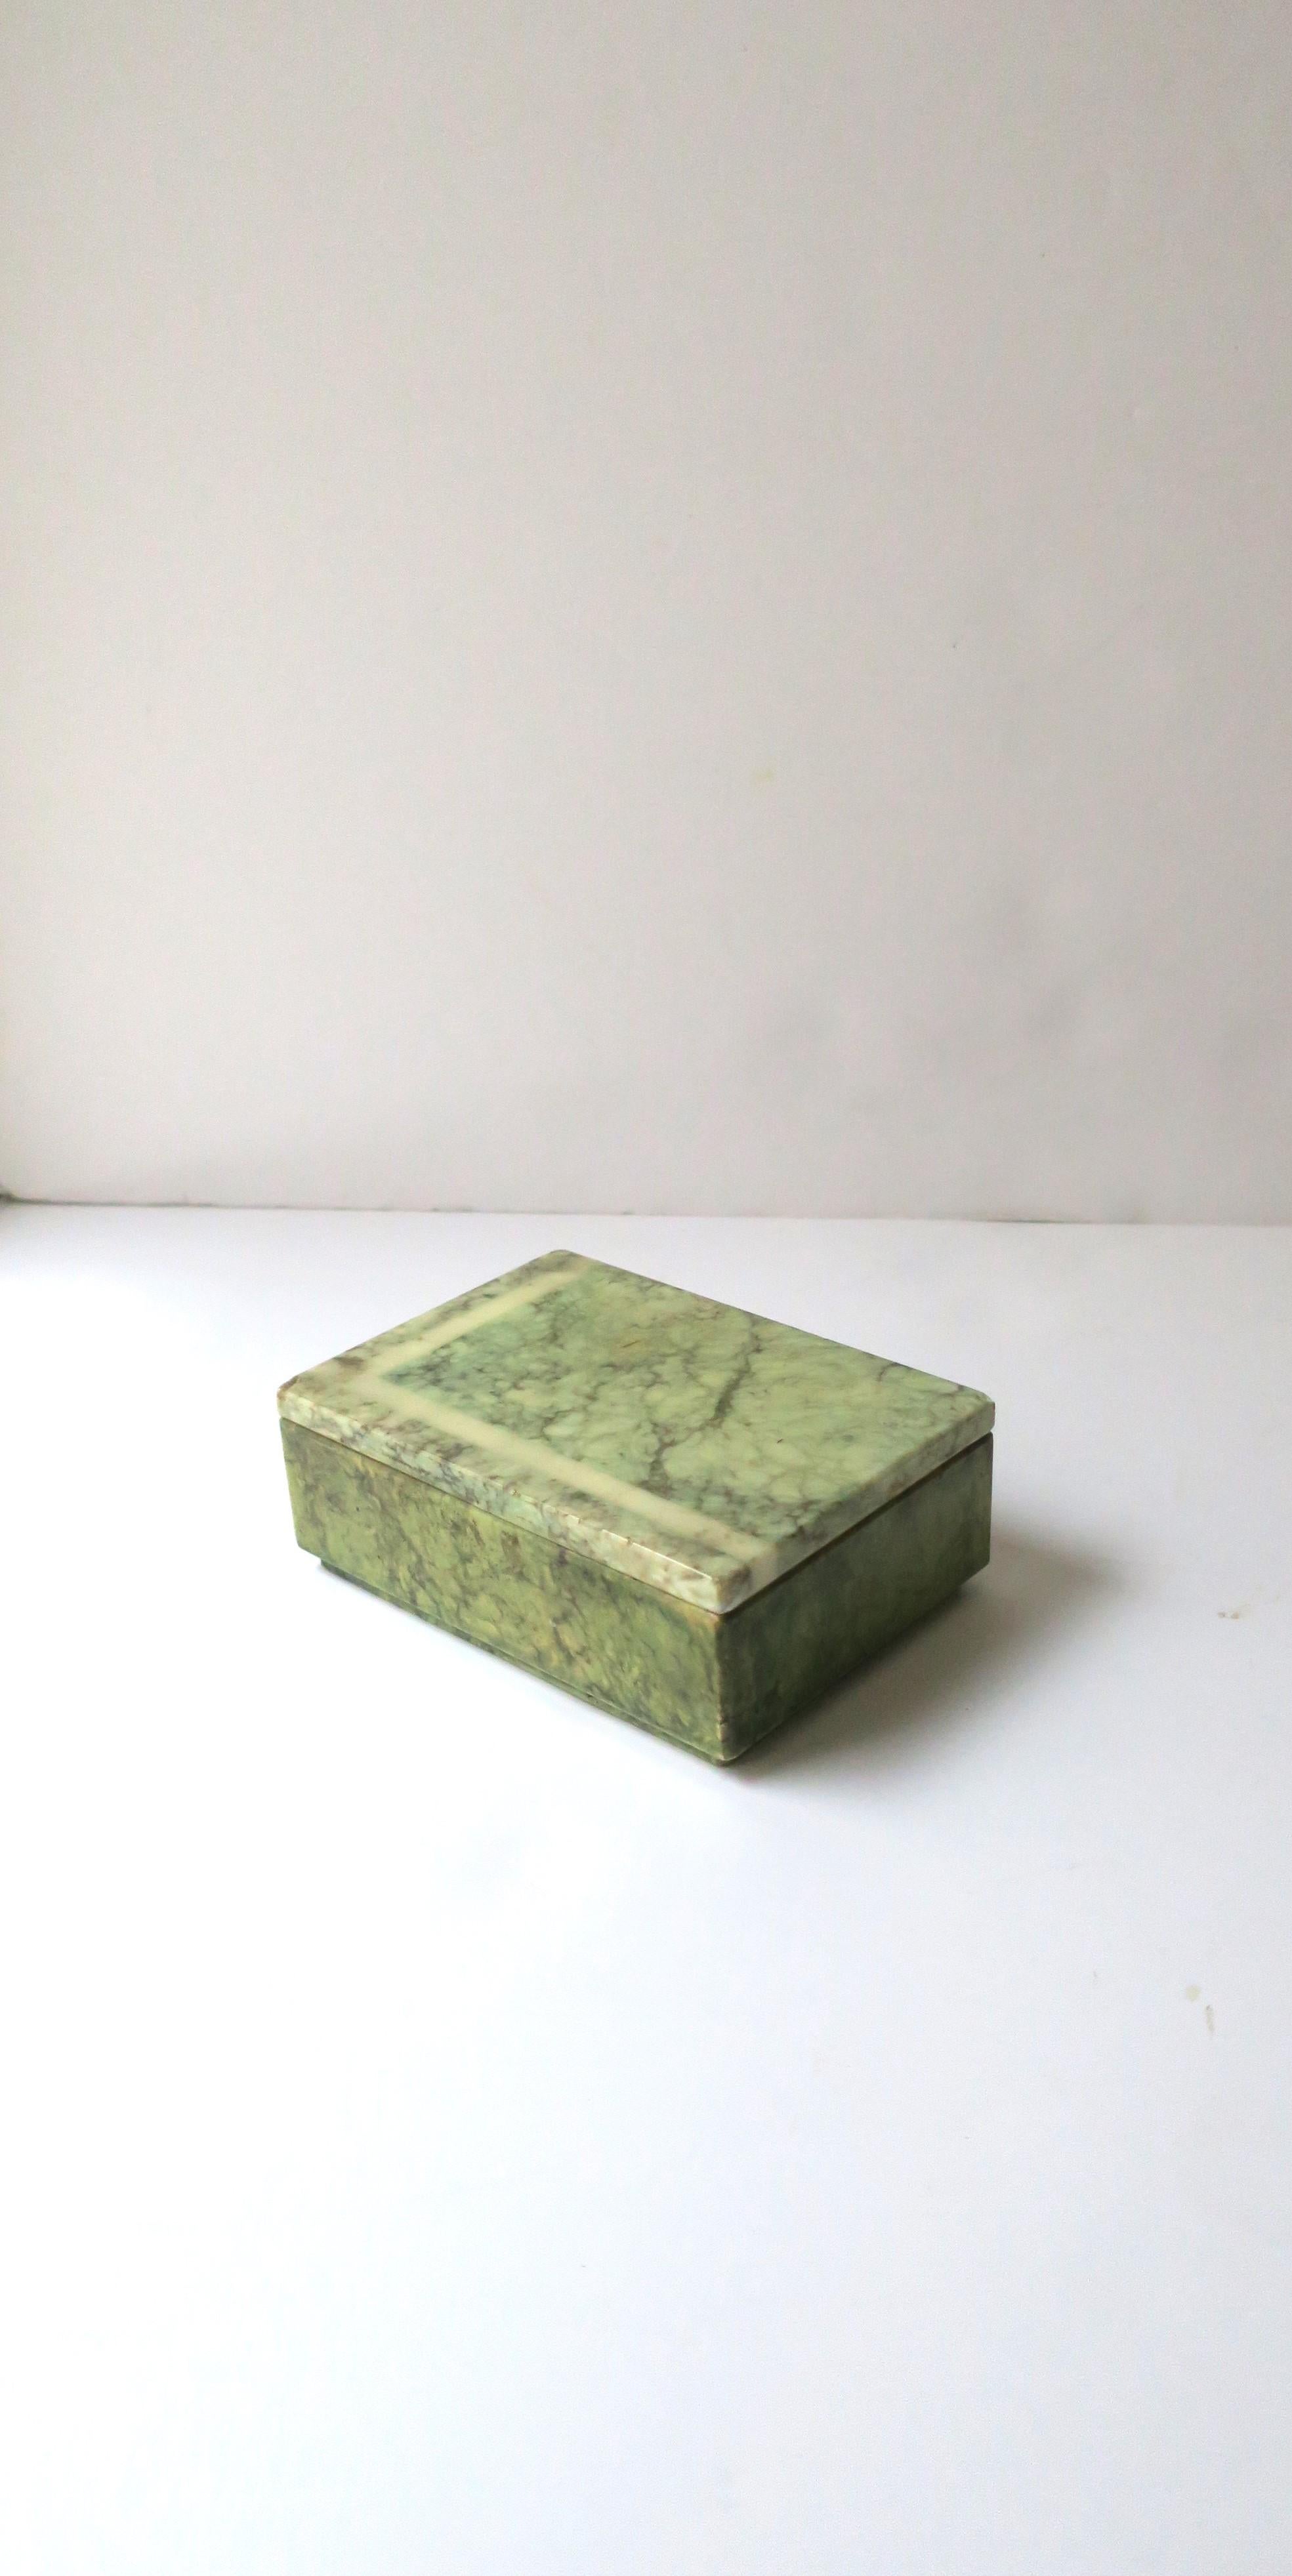 Boîte à bijoux italienne moderne des années 70 en marbre d'albâtre vert, vers les années 70, Italie. Idéal comme pièce indépendante, pour les bijoux (comme démontré), ou d'autres objets sur une table de nuit, une vanité, une console, un bureau, un